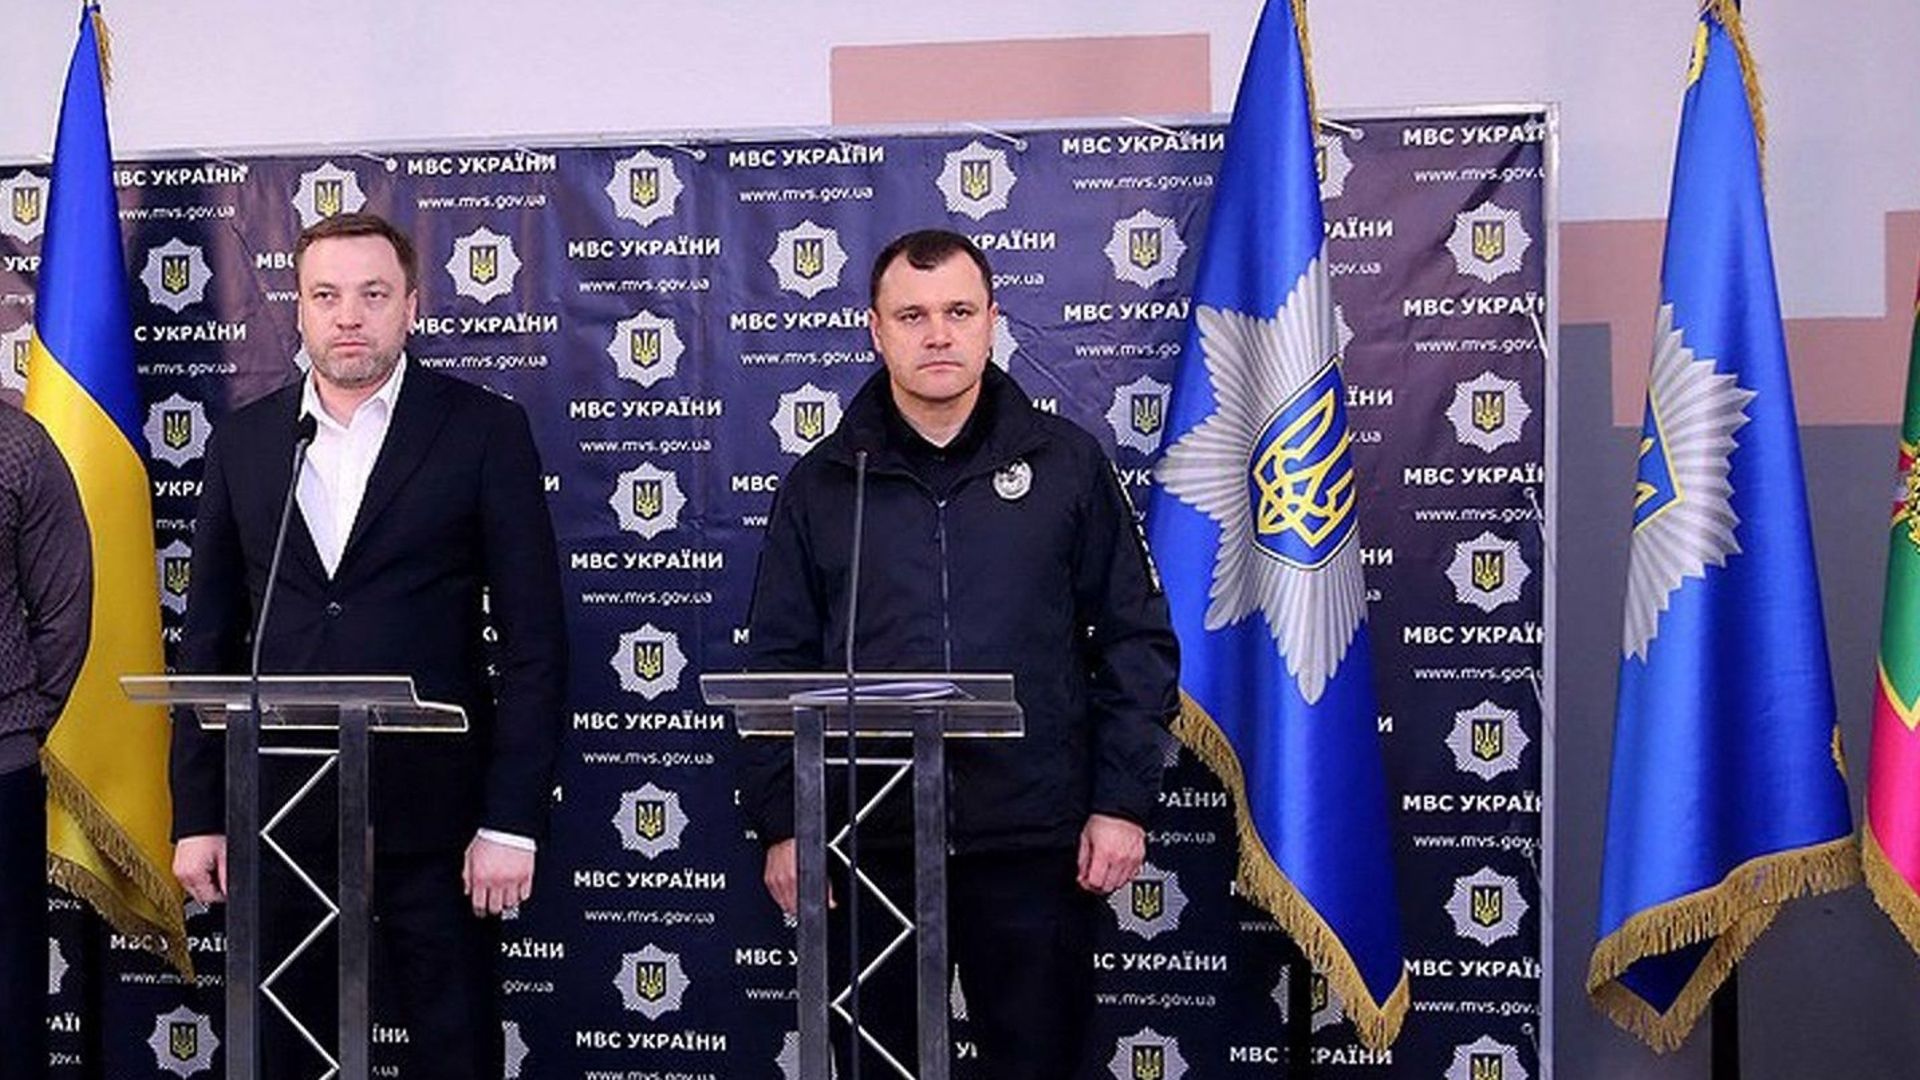 Le ministre ukrainien de l'Intérieur Denys Monastyrsky à gauche sur la photo. 